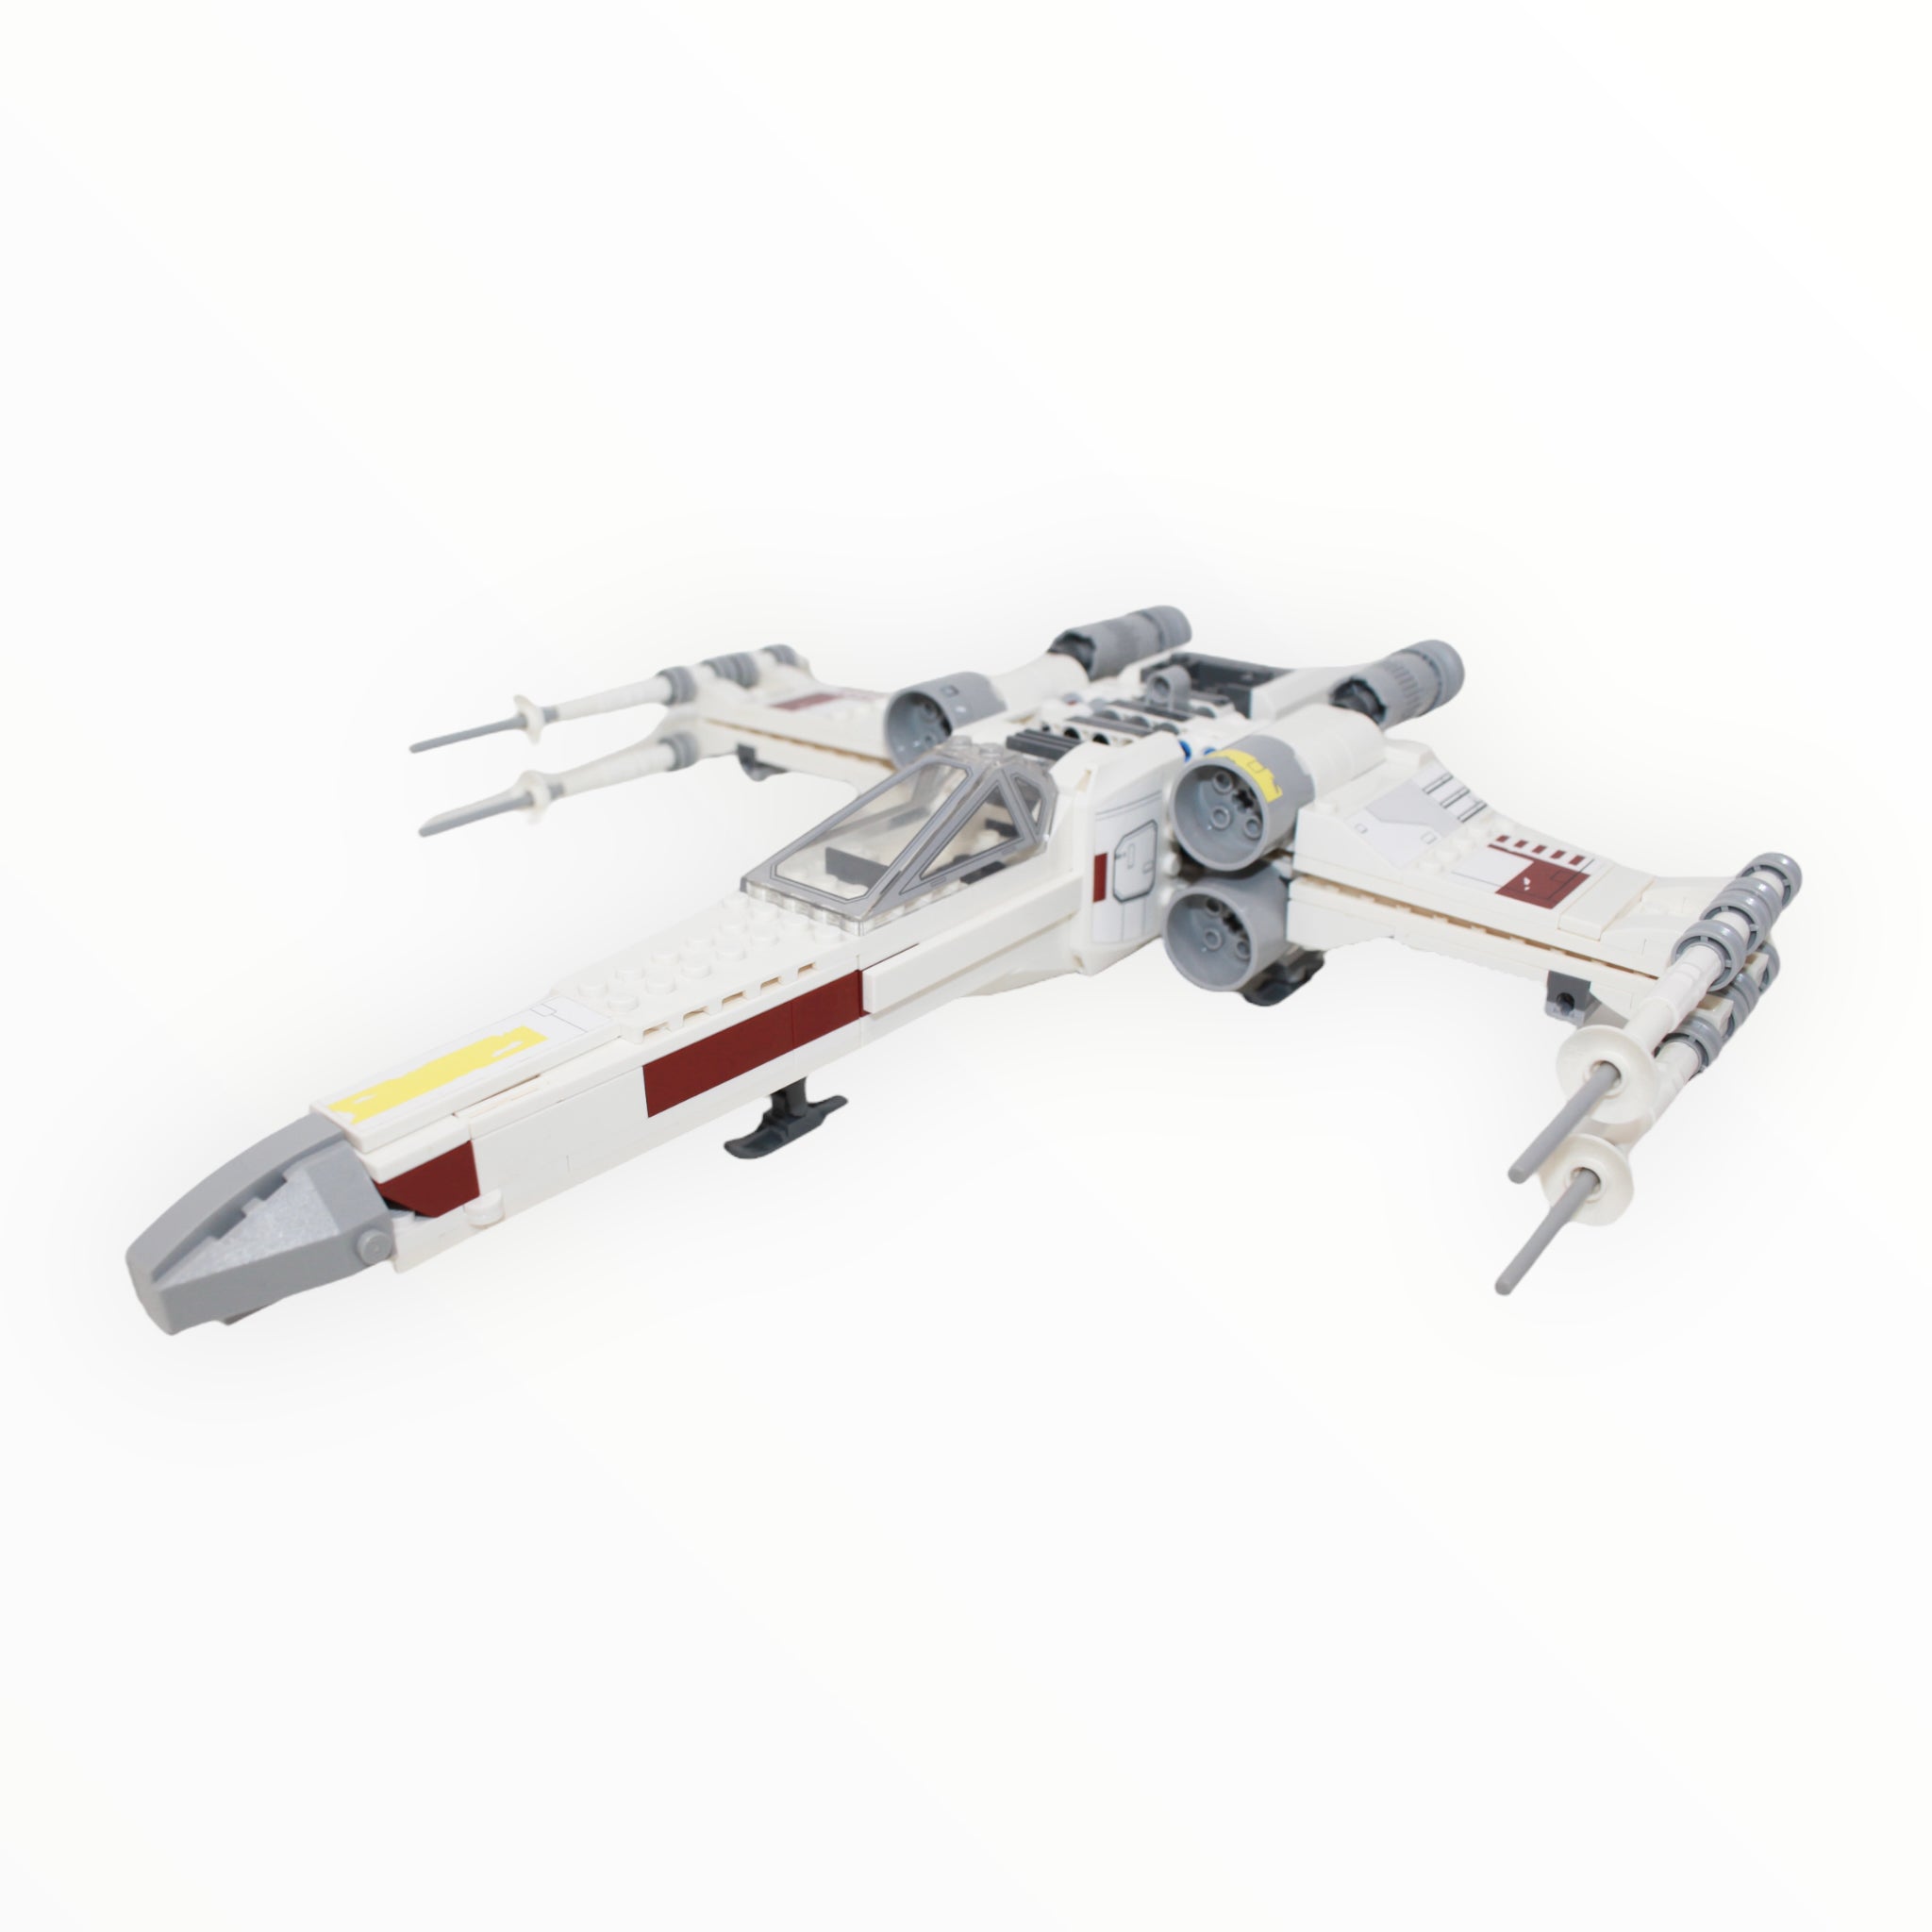 LEGO 75301 Star Wars Luke Skywalker's X-wing Fighter